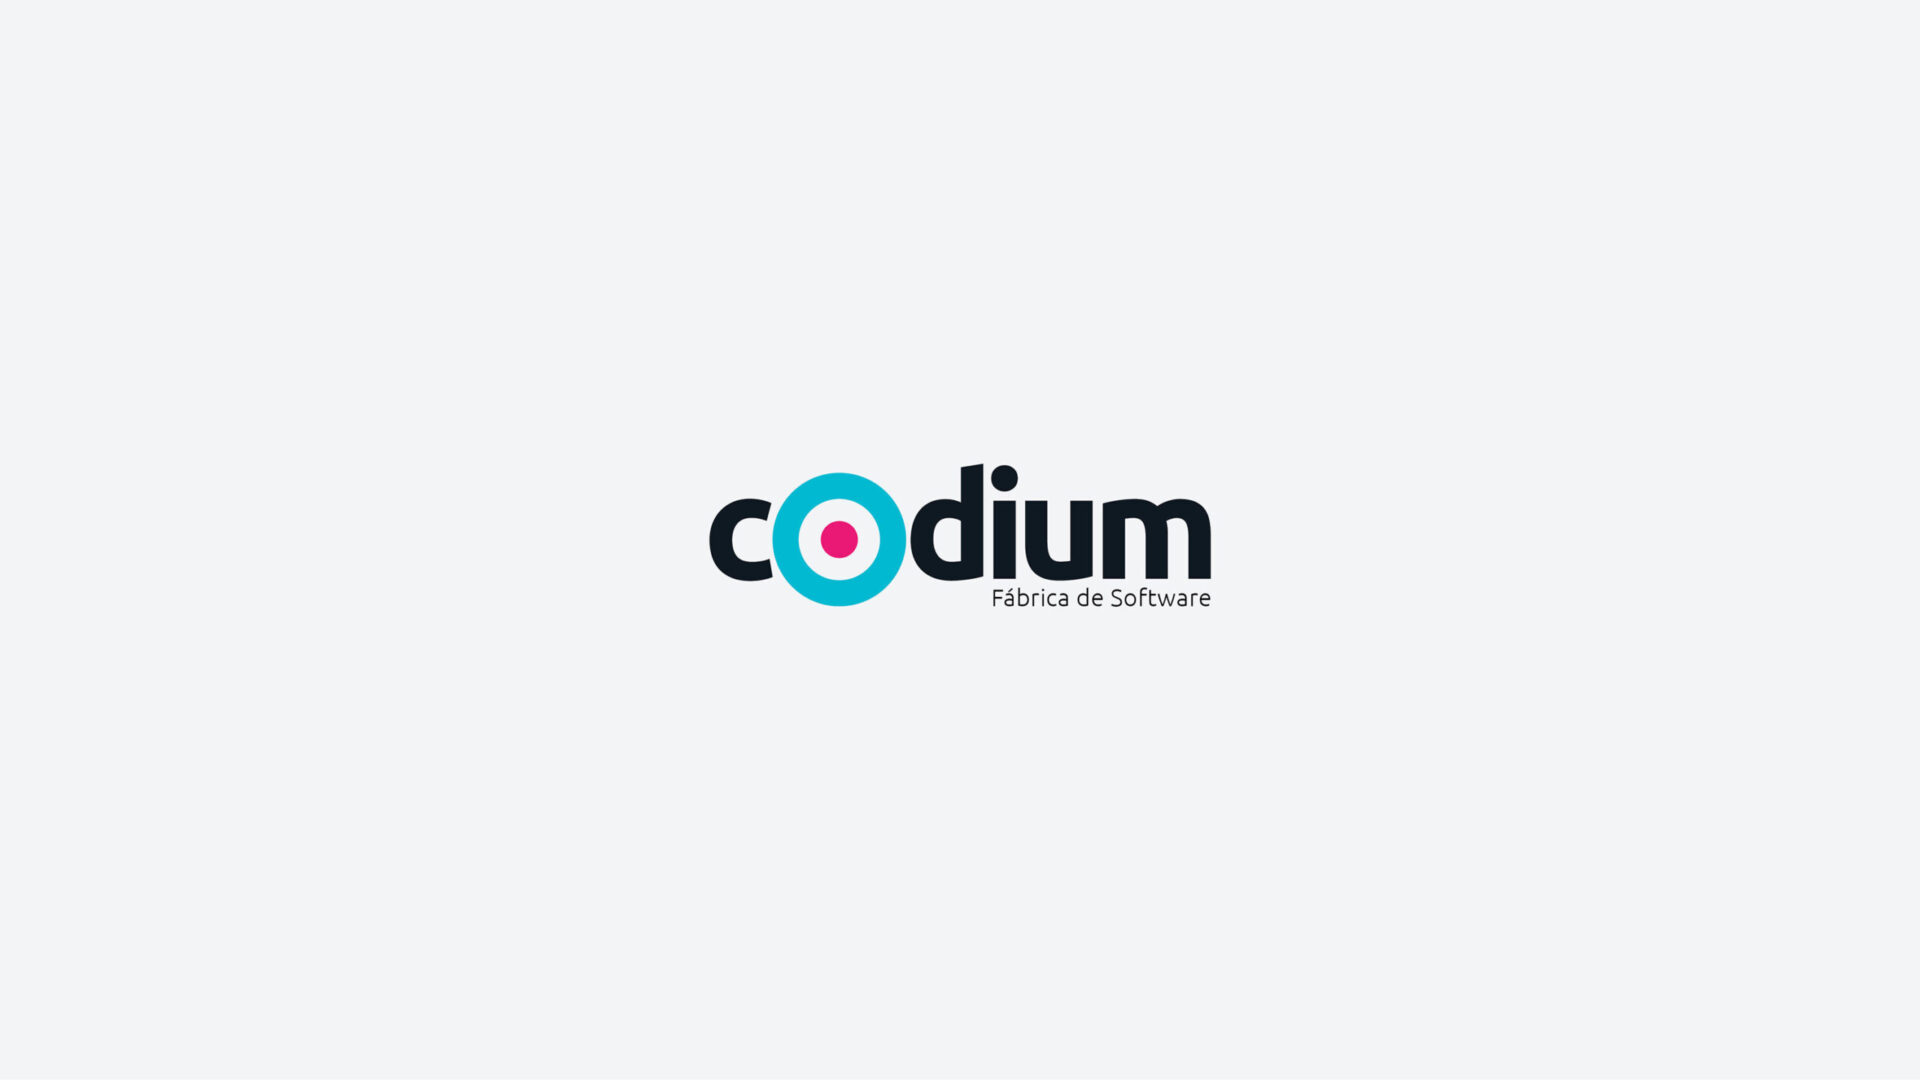 Codium-Branding-01